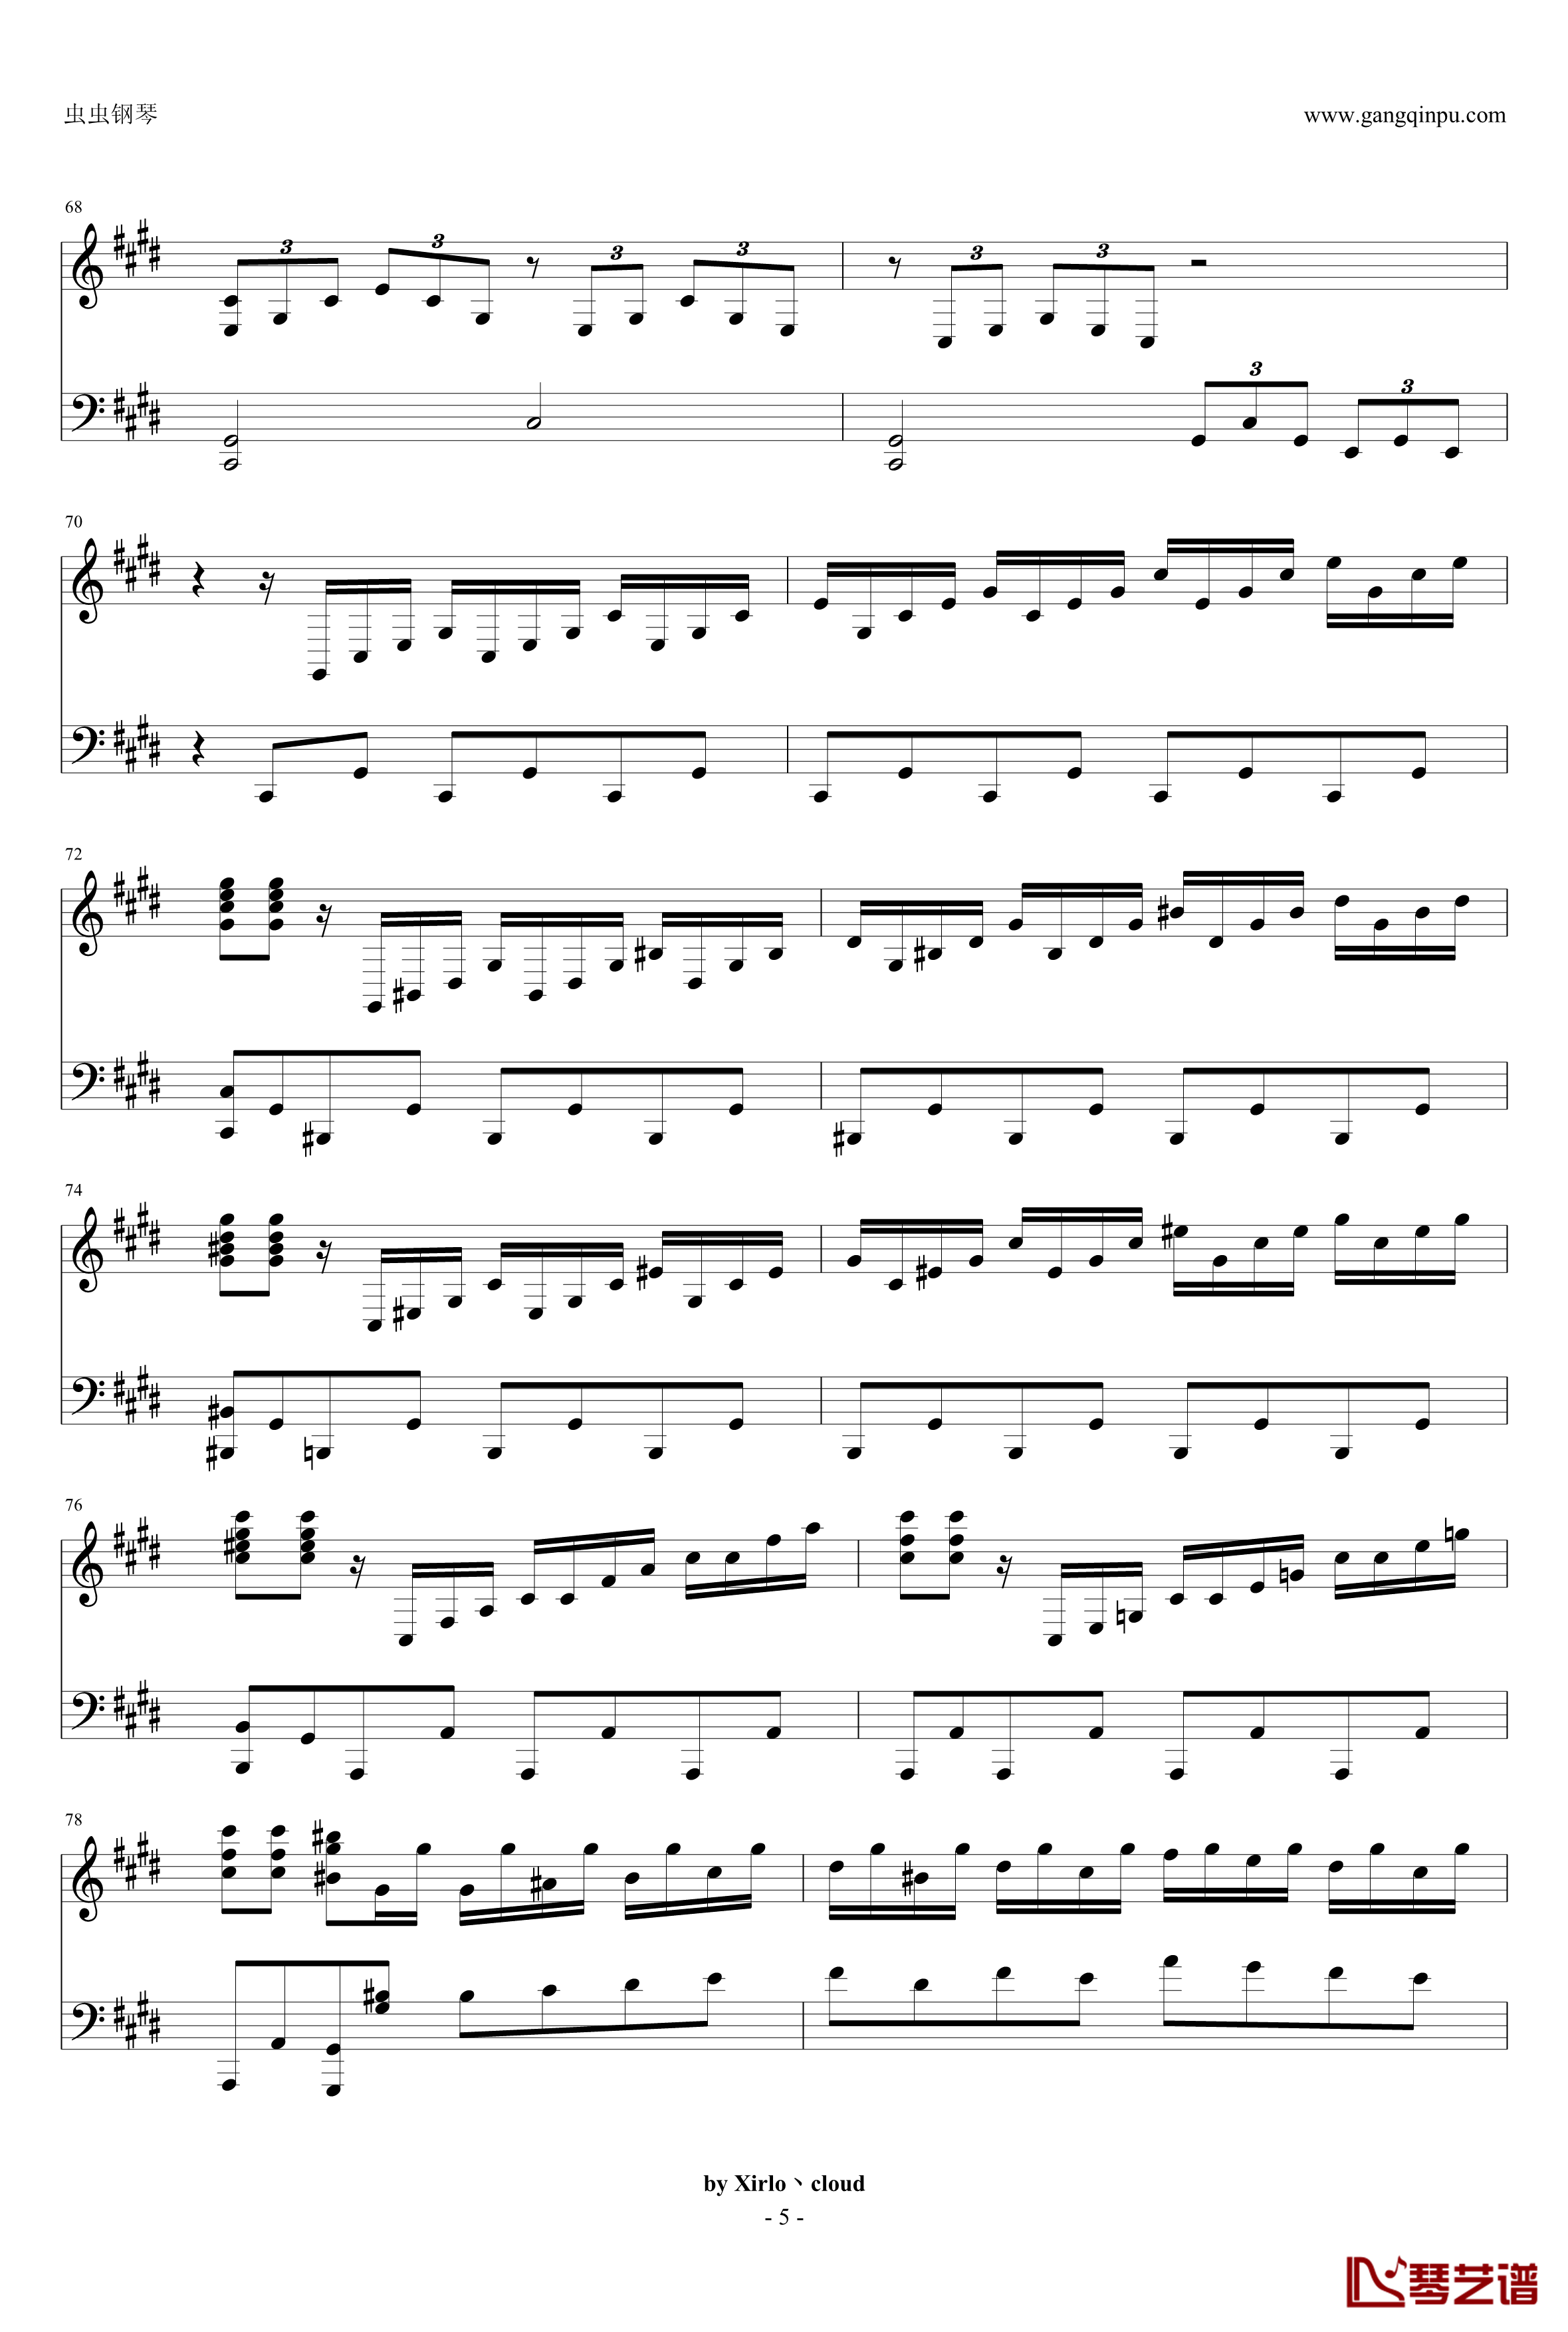 月光奏鸣曲钢琴谱-改编版-贝多芬-beethoven5